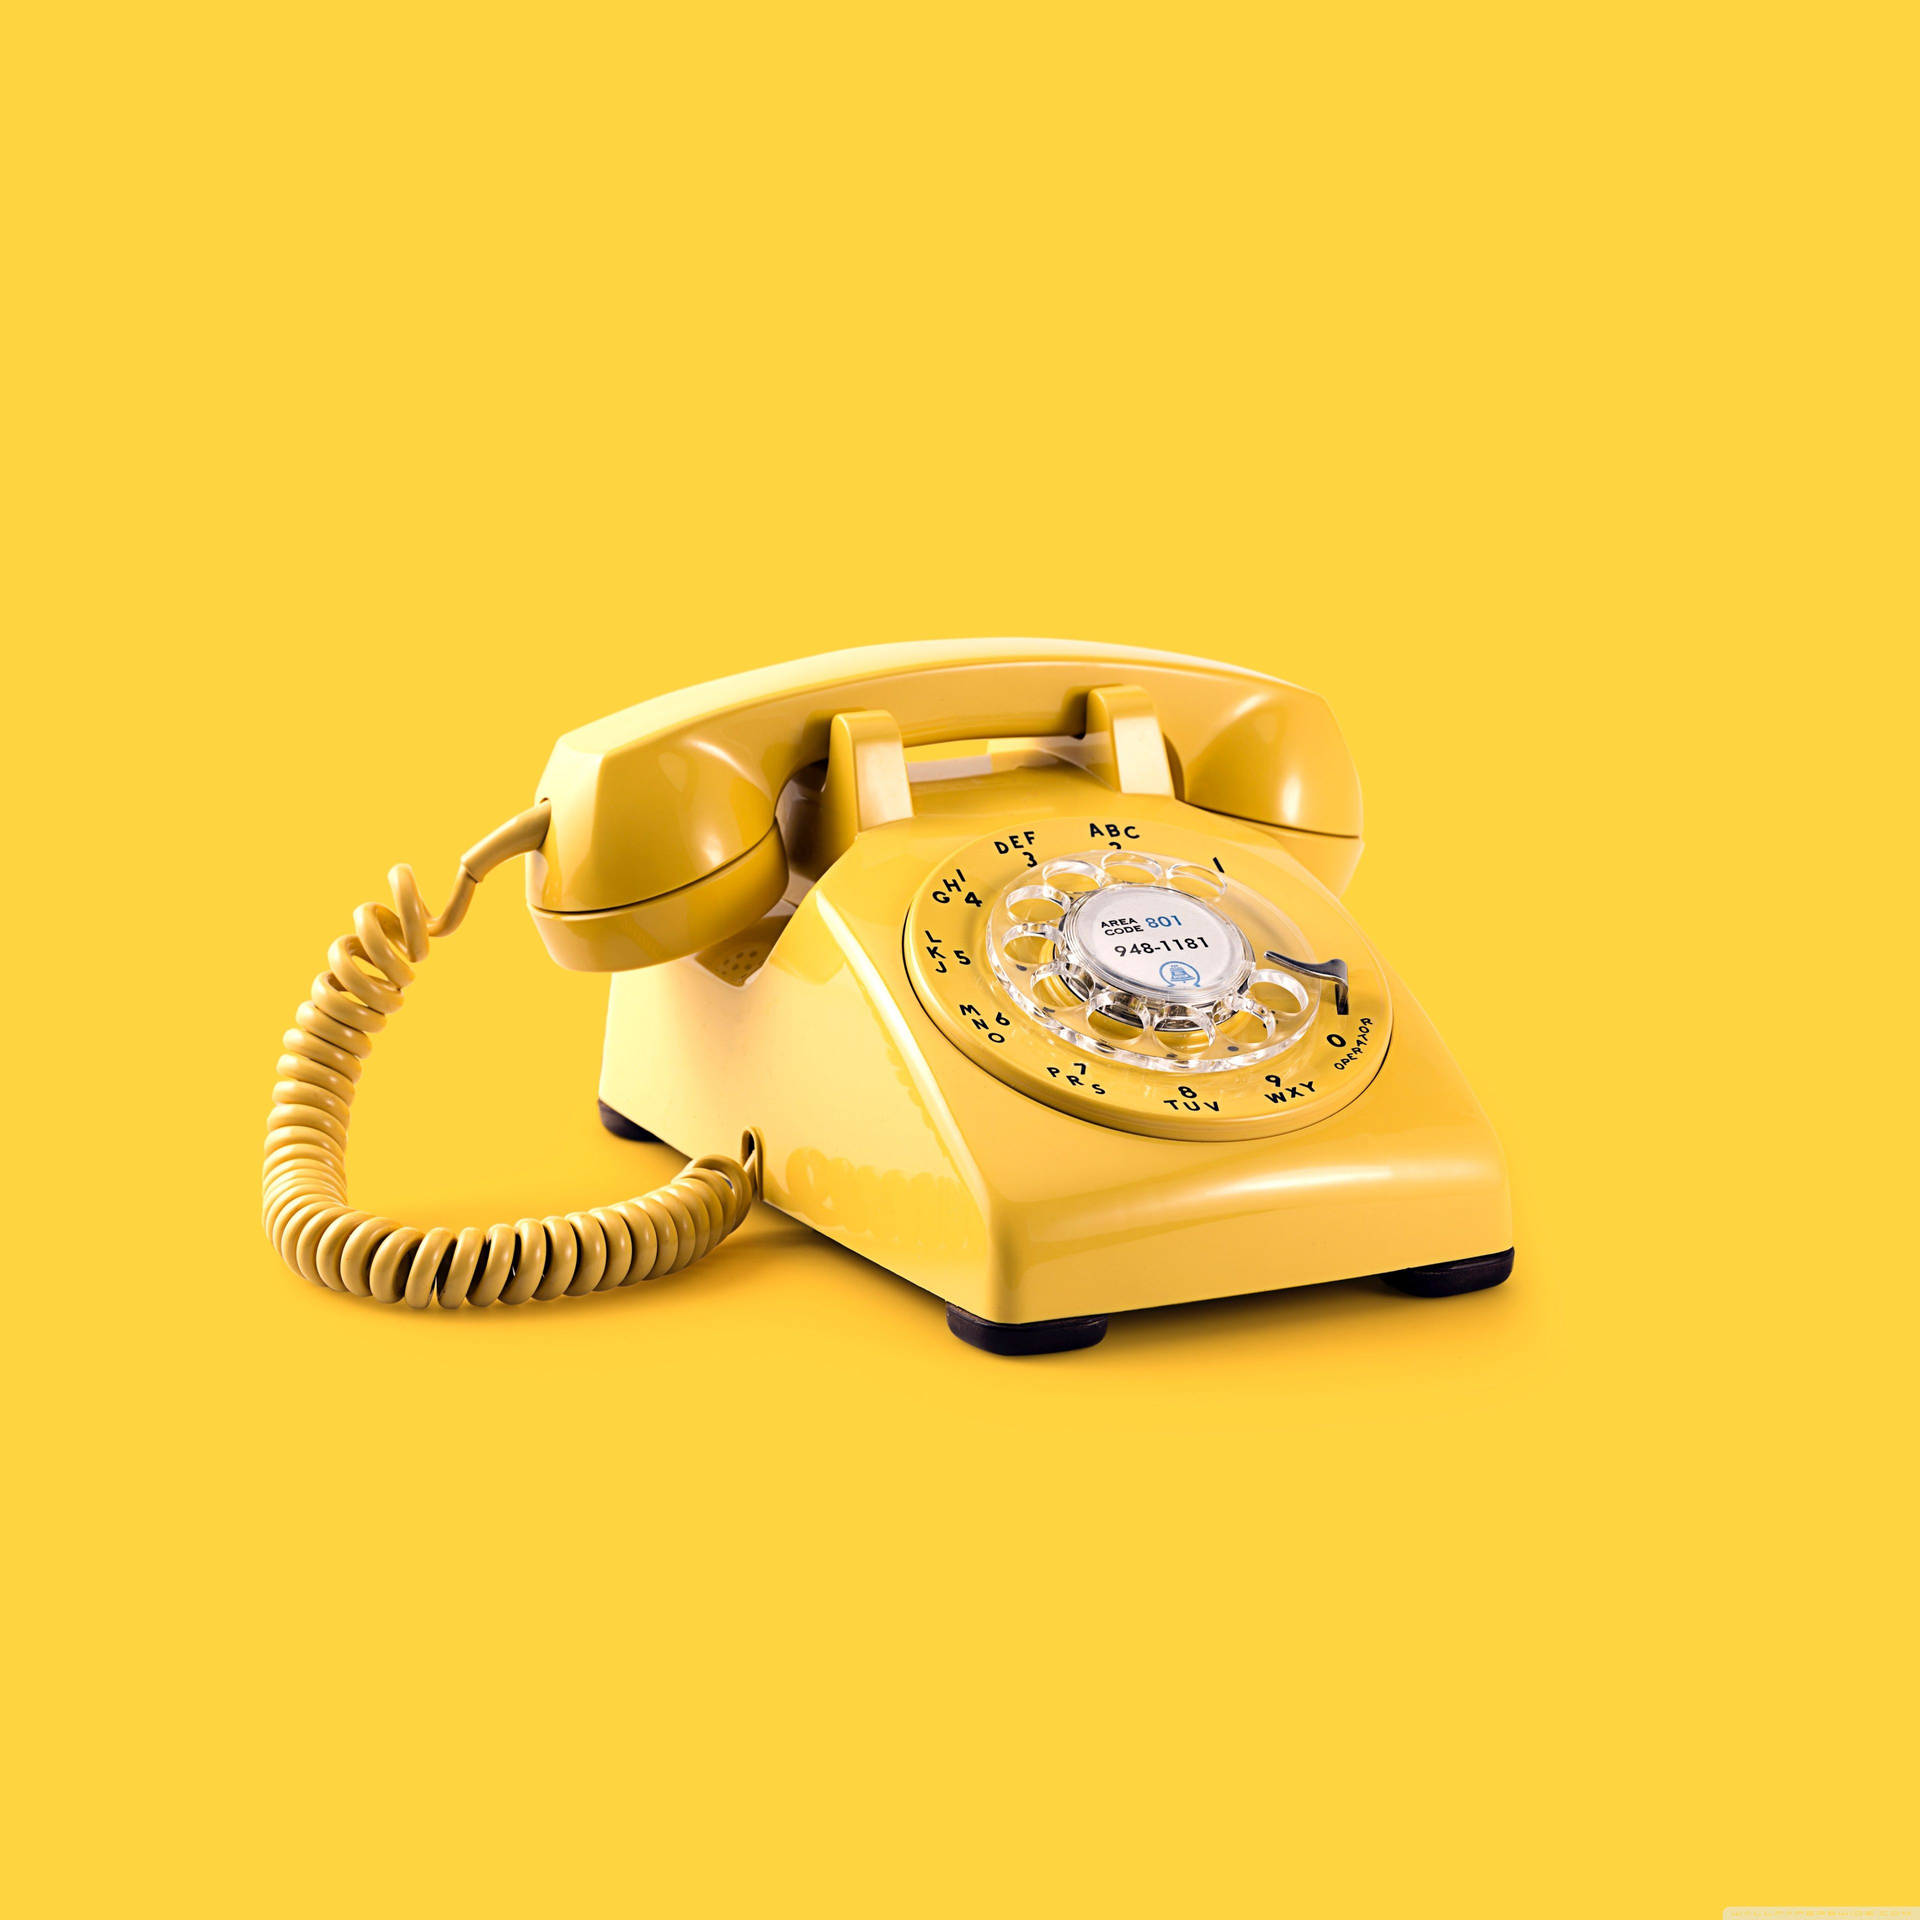 Aesthetic Retro Yellow Telephone